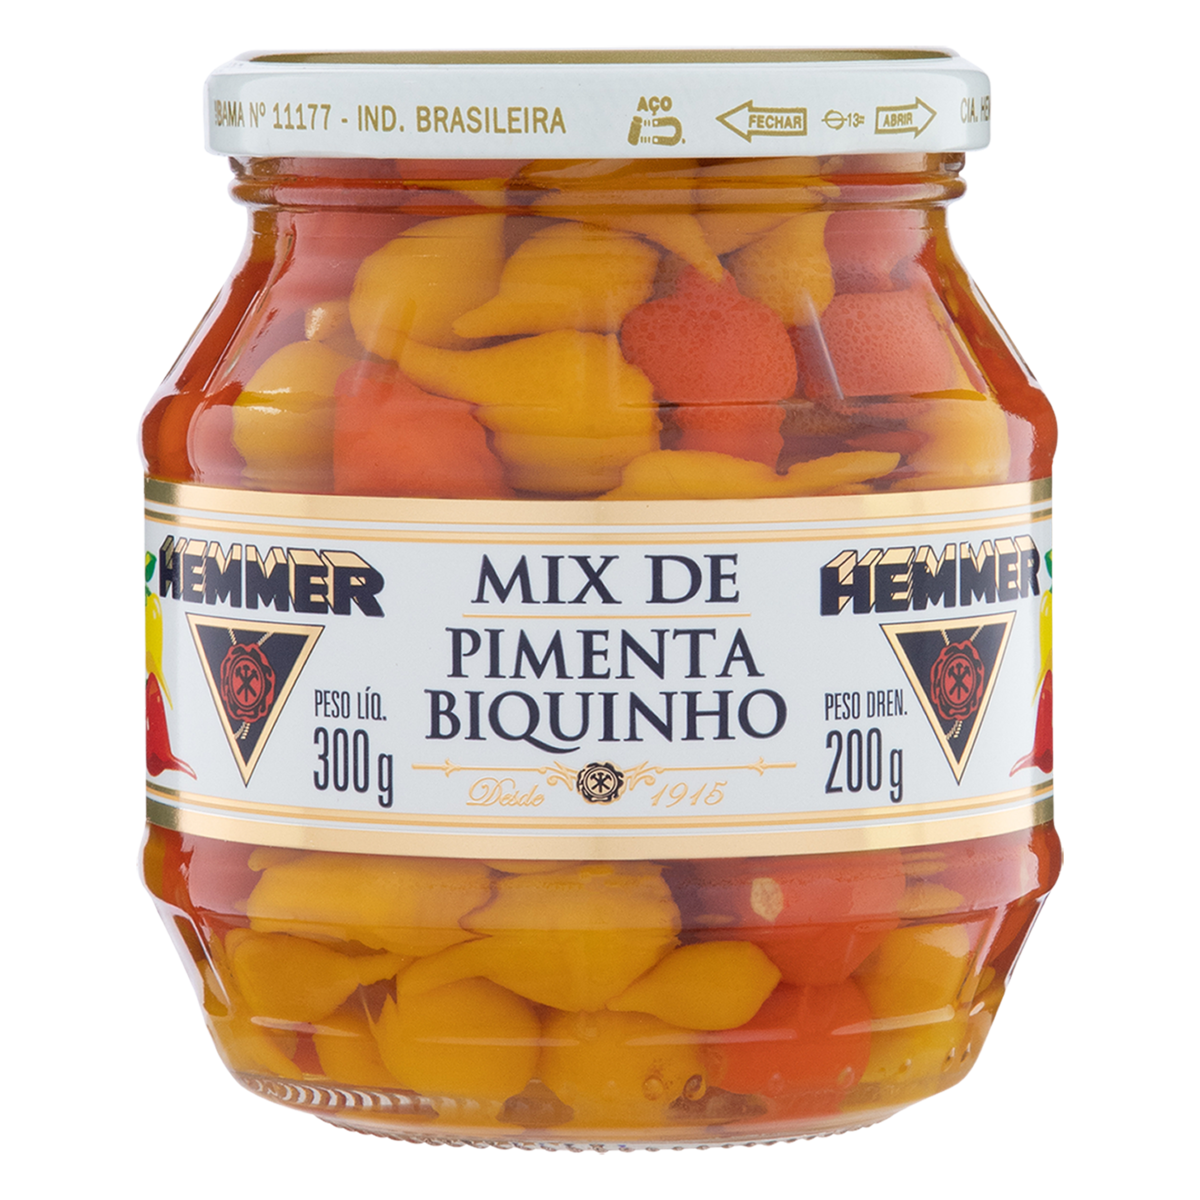 Pimenta Biquinho Mix - Hemmer 200g